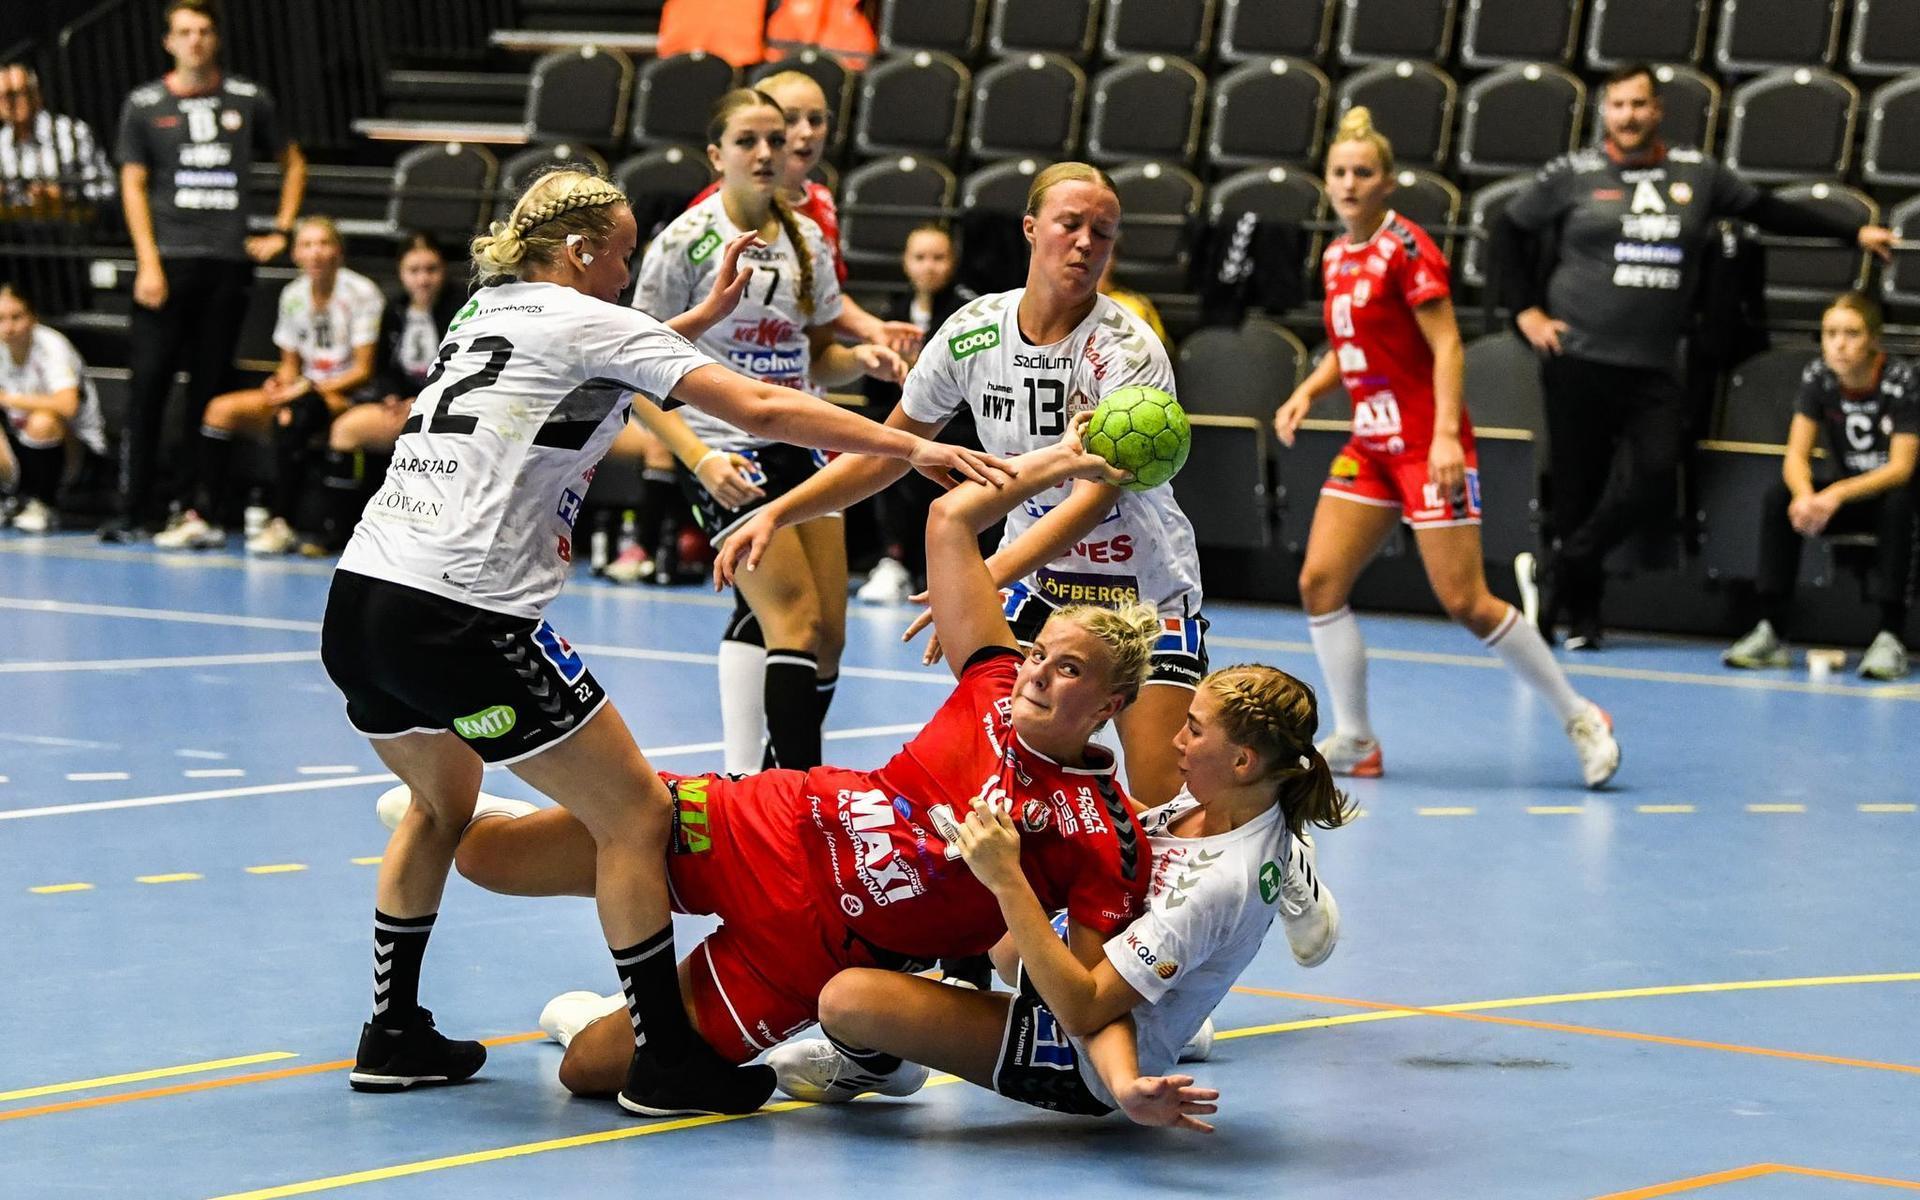 Svenska Handbollförbundet stoppar allt division 1-spel till och med den 22 december, vilket påverkar både damlaget och herrlaget i HK Drott.